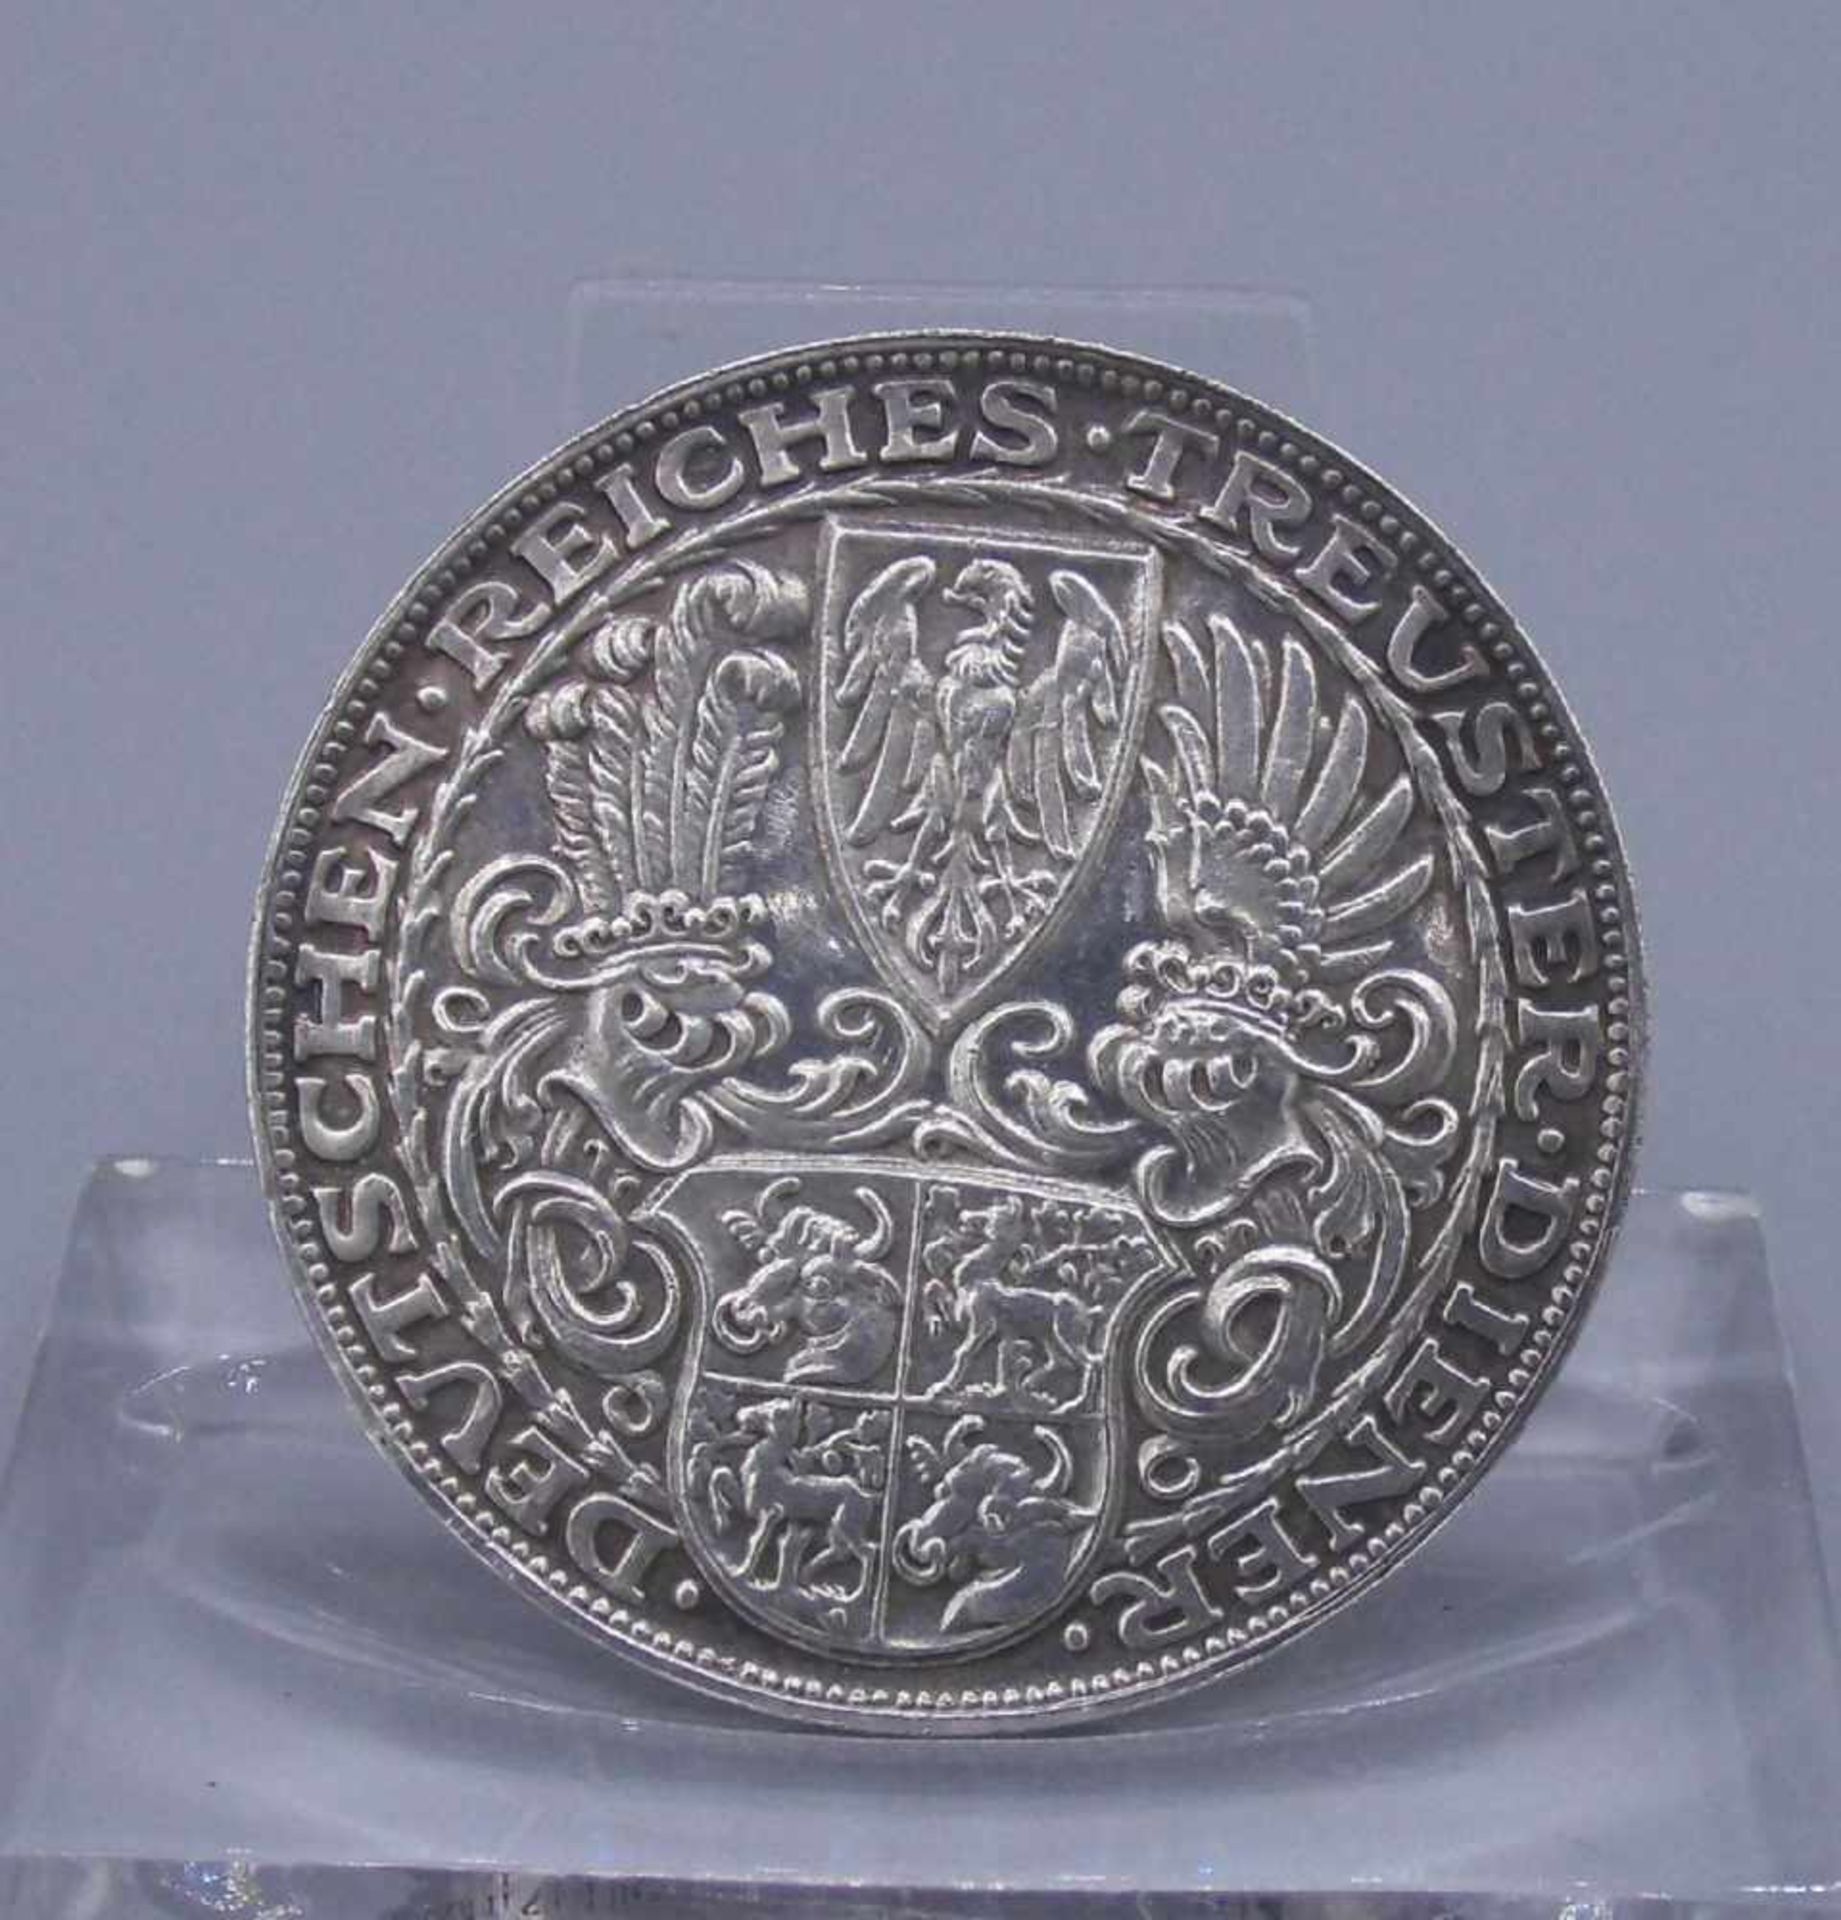 SILBER-MEDAILLE / GEDENKMÜNZE: "von Hindenburg" / silver coin, 1927, 900er Silber; avers: Porträt - Image 2 of 3